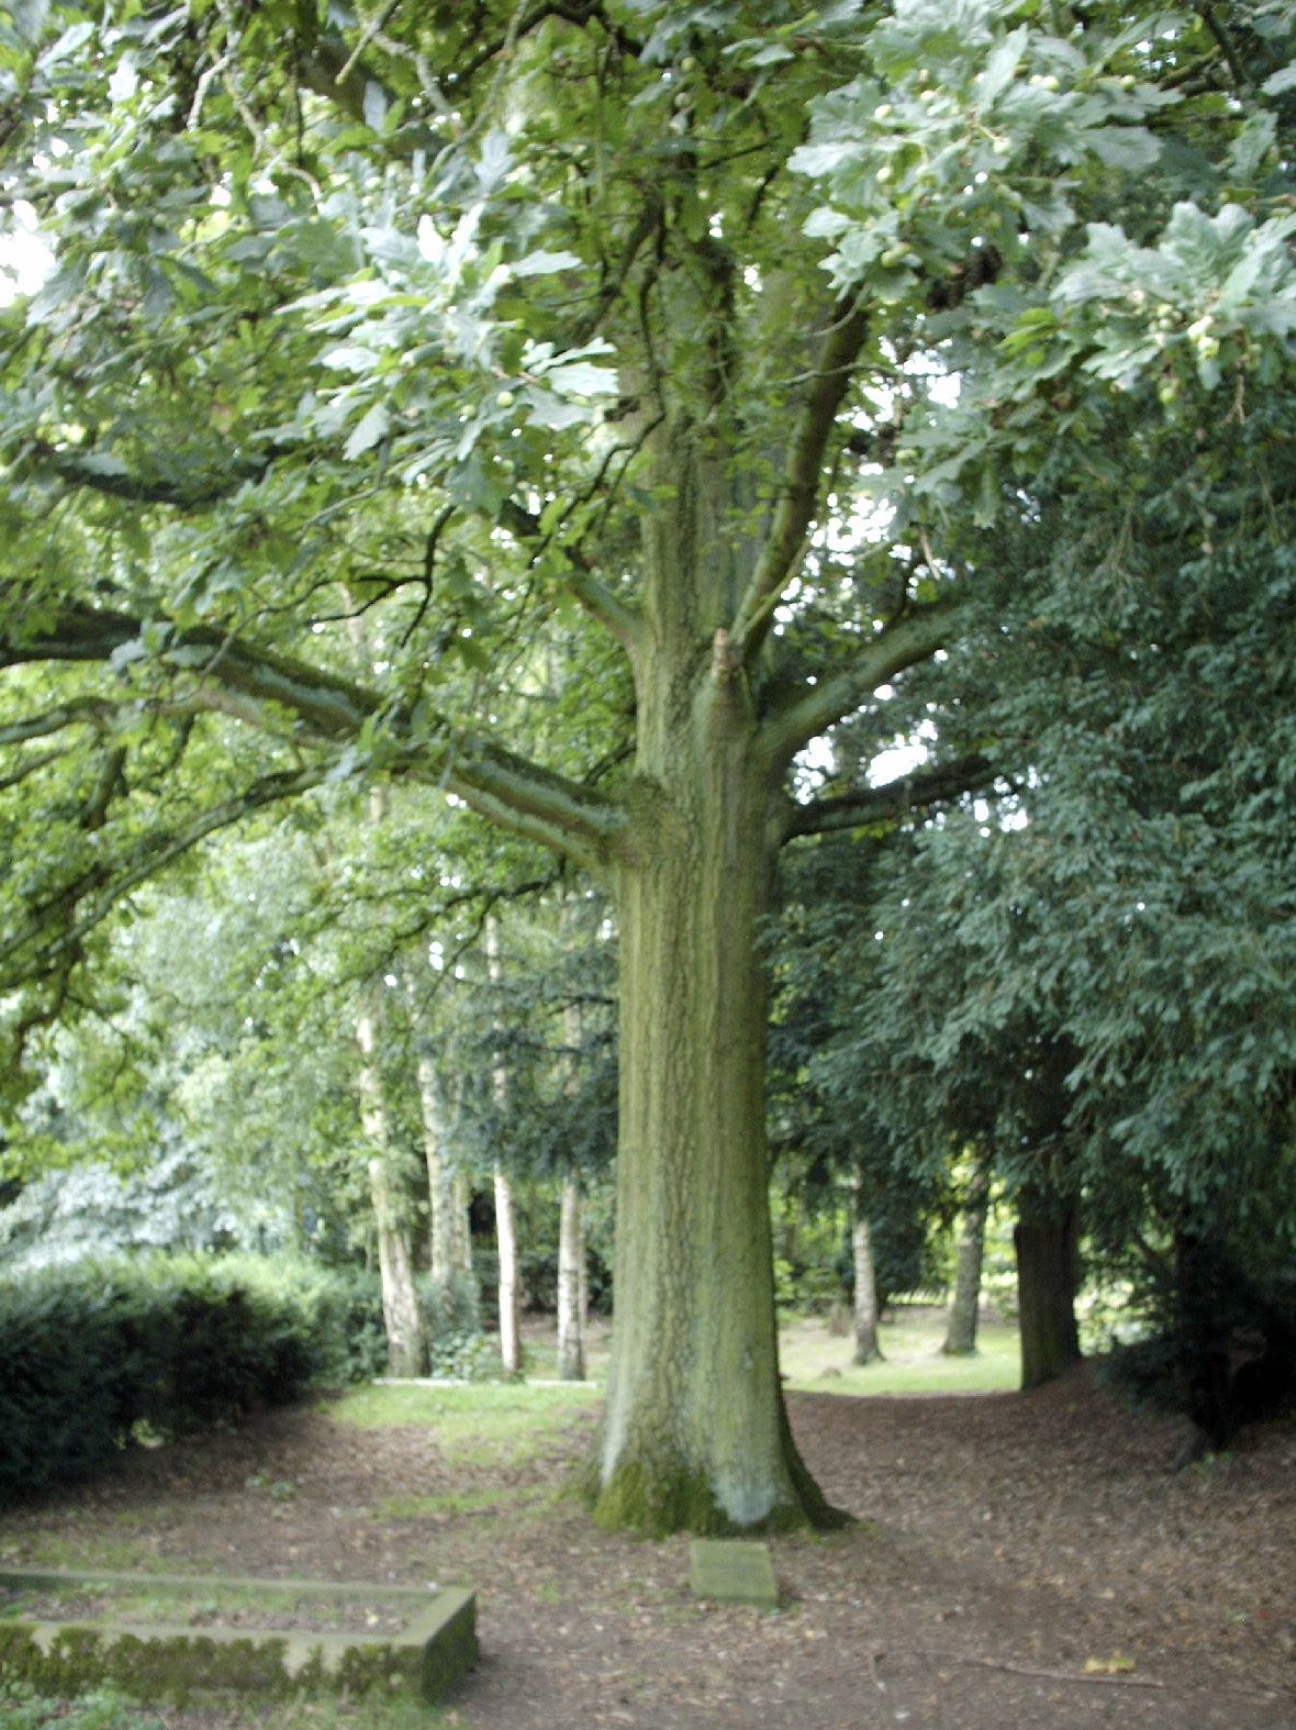 The Happy Huntsman's Tree - an Oak